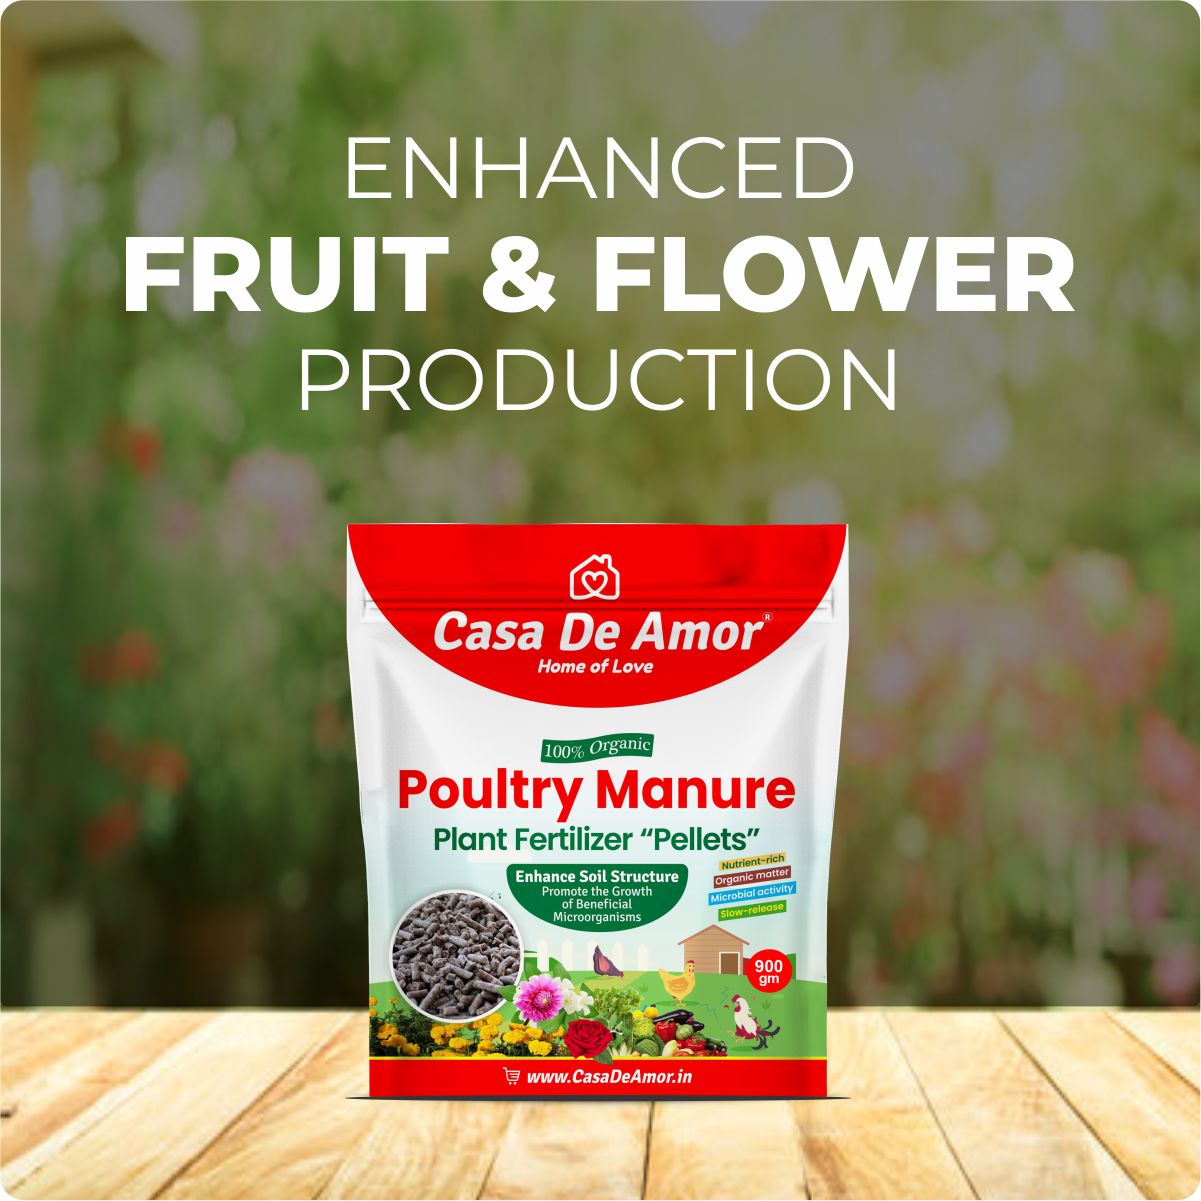 Casa De Amor Poultry Manure Organic Fertilizer Pellets | Sustainable and Nutrient-rich Solution for Plants